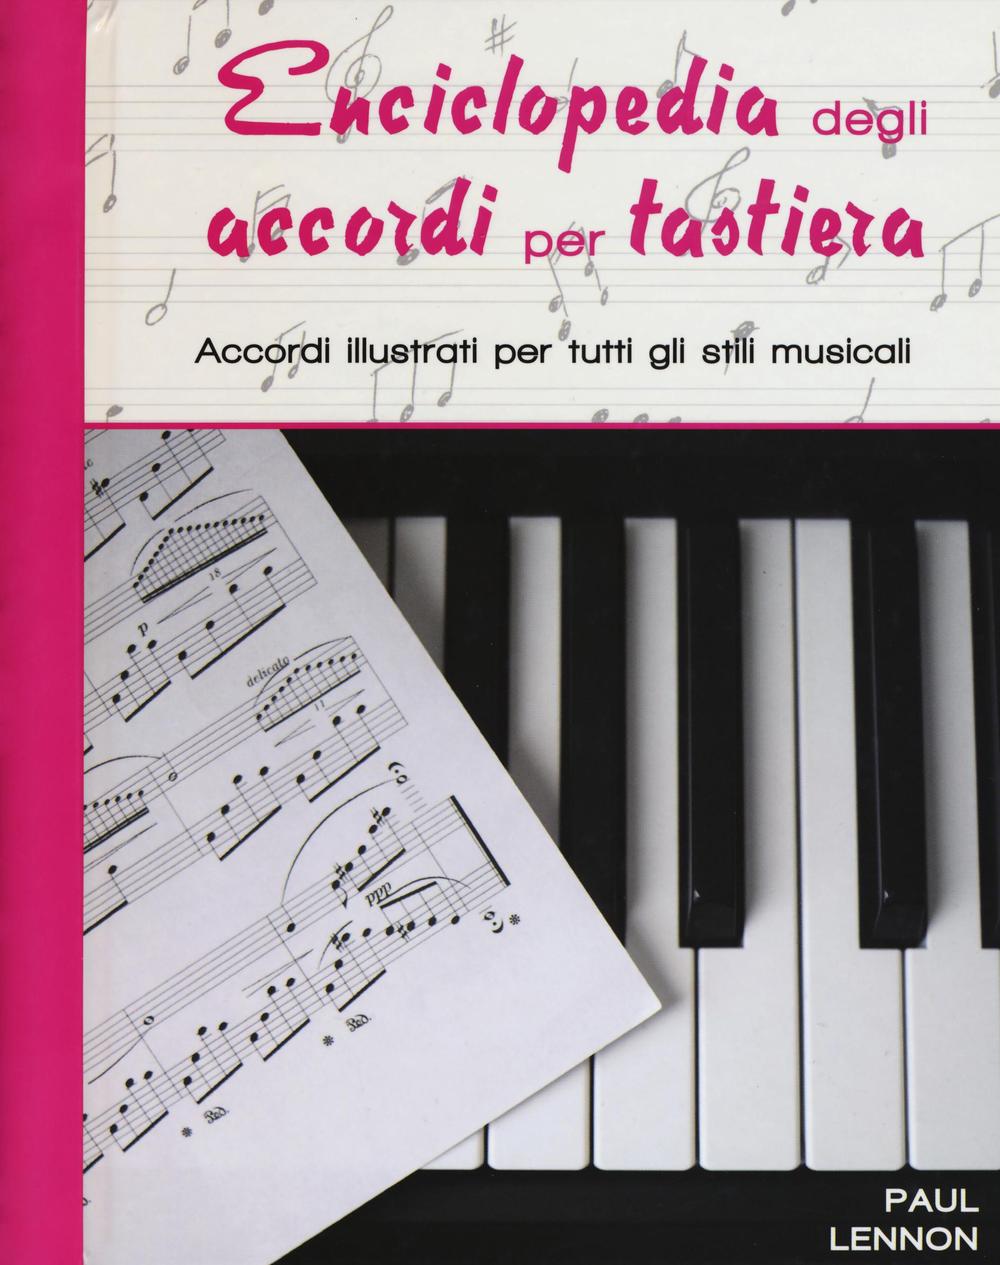 Knjiga Enciclopedia degli accordi per tastiera. Accordi illustrati per tutti gli stili musicali Paul Lennon